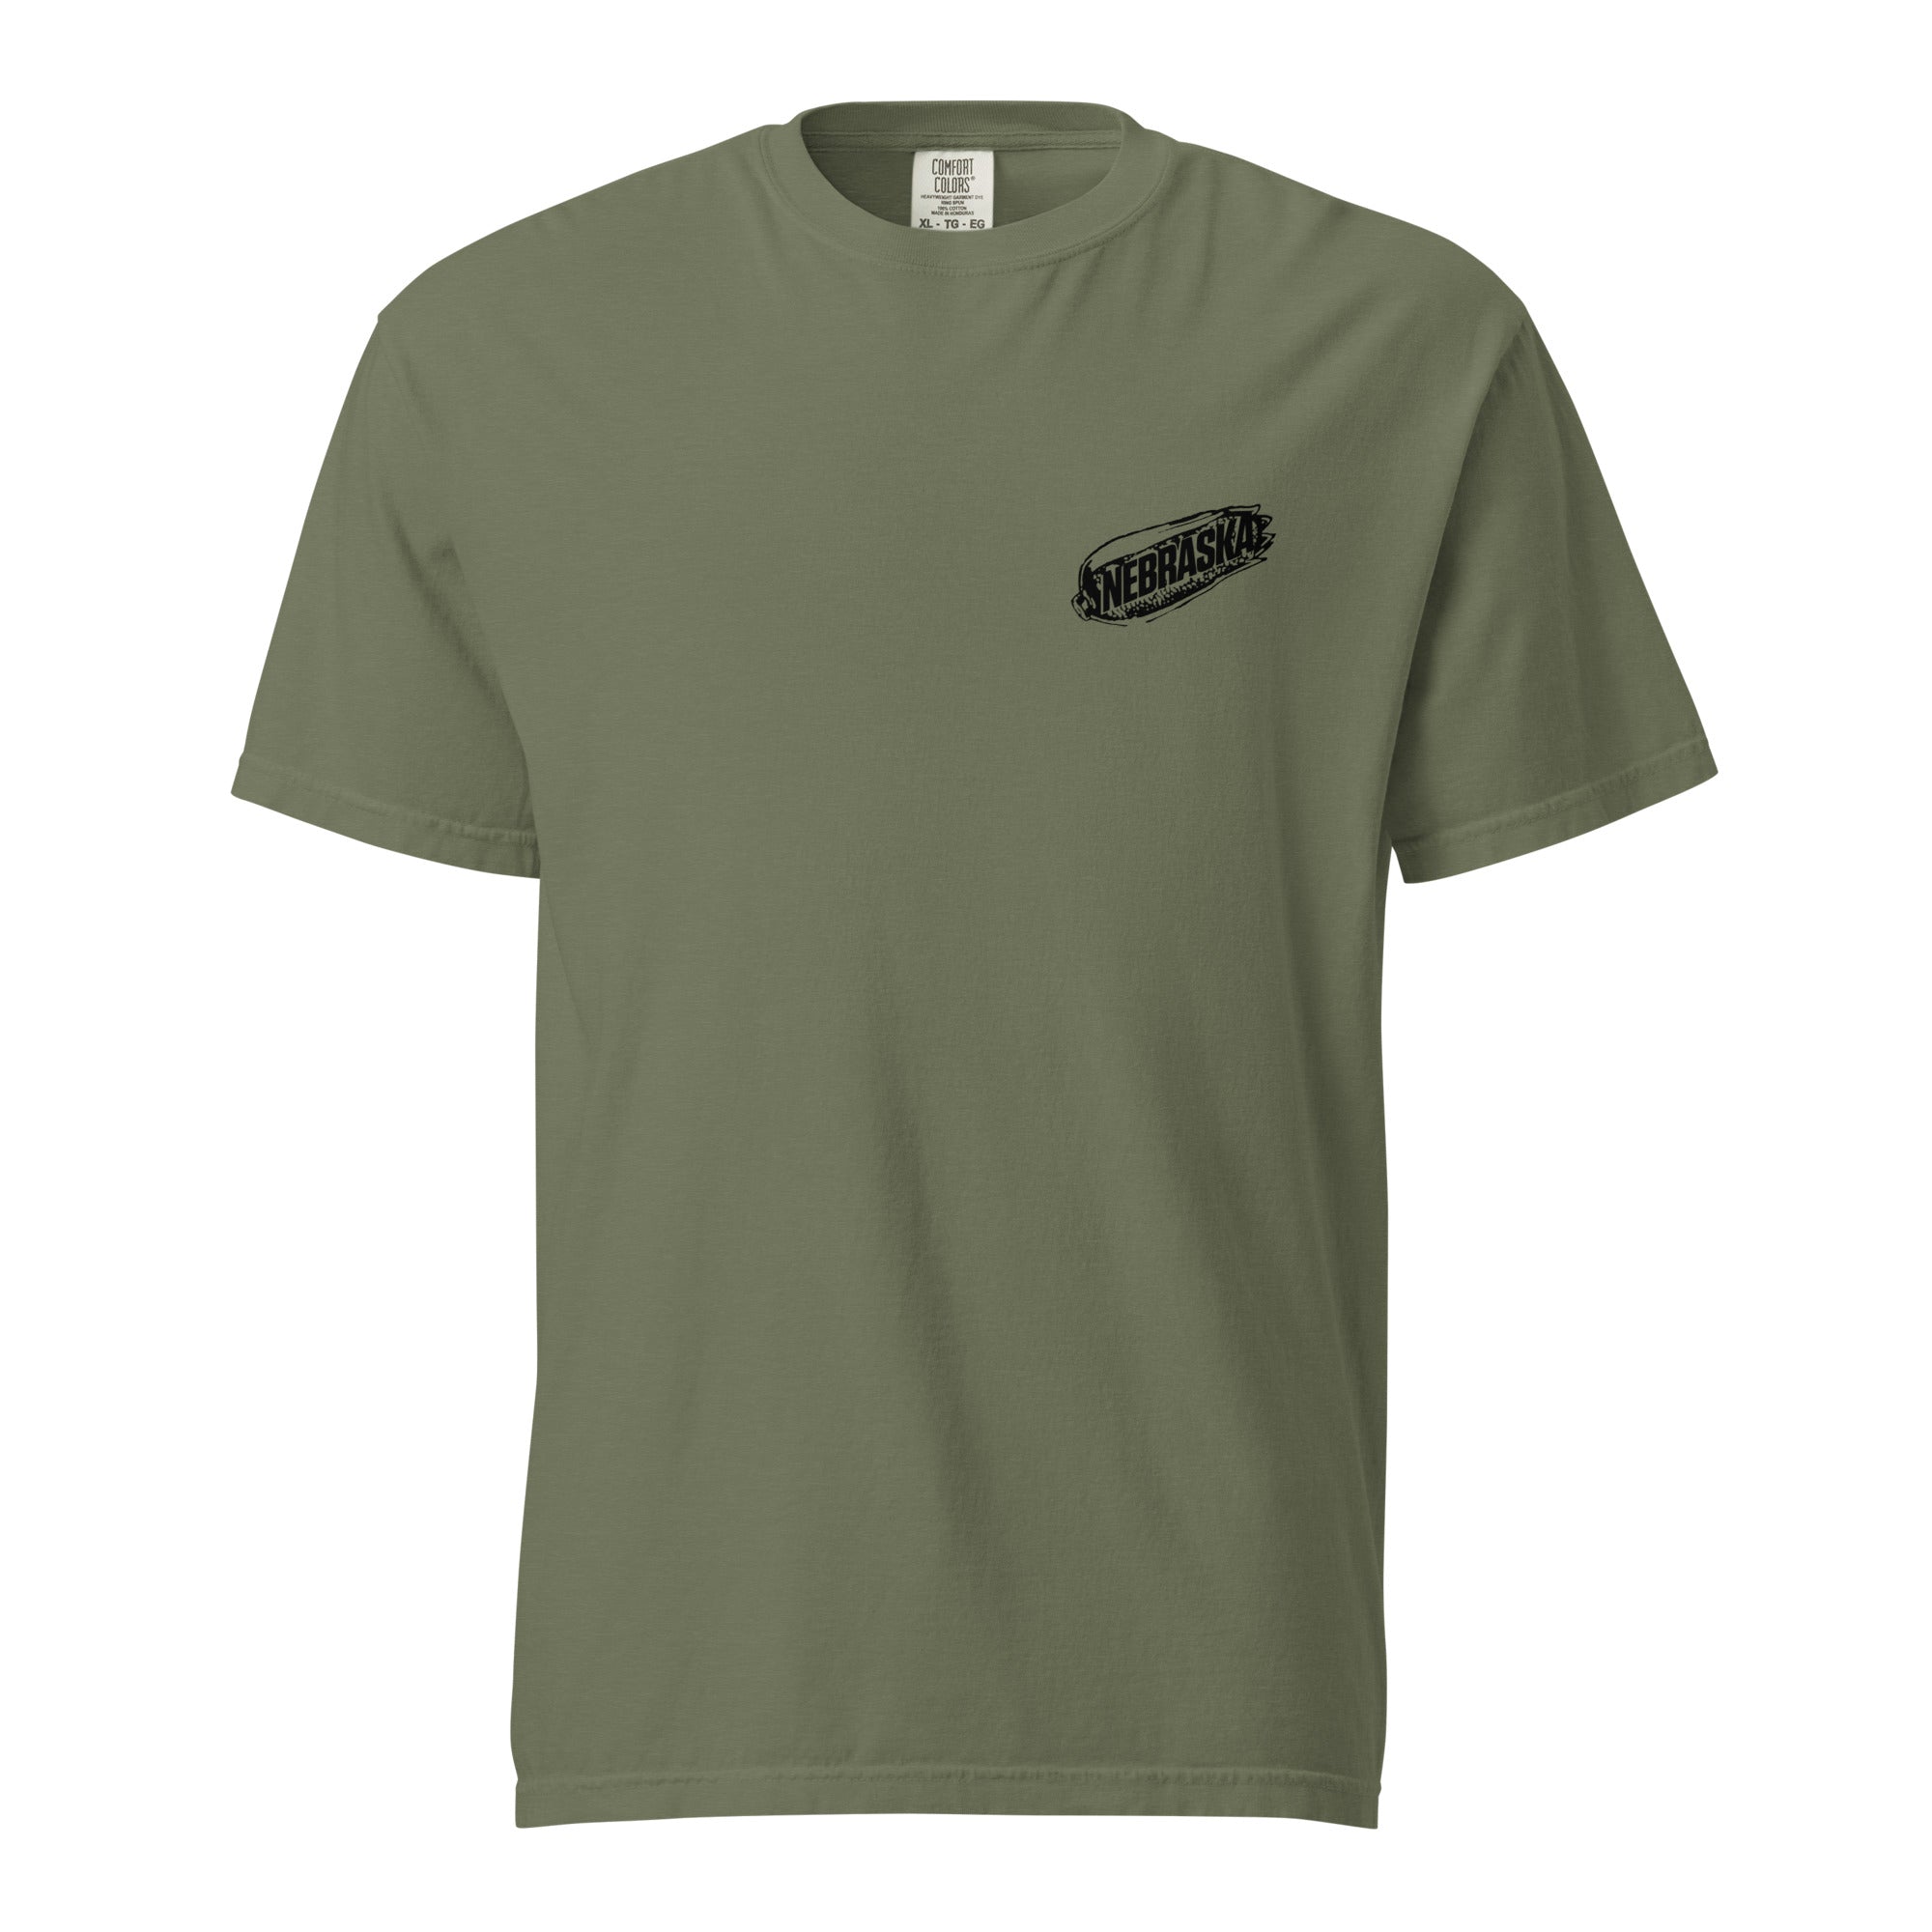 unisex-garment-dyed-heavyweight-t-shirt-moss-front-65cfe4dca4eab.jpg